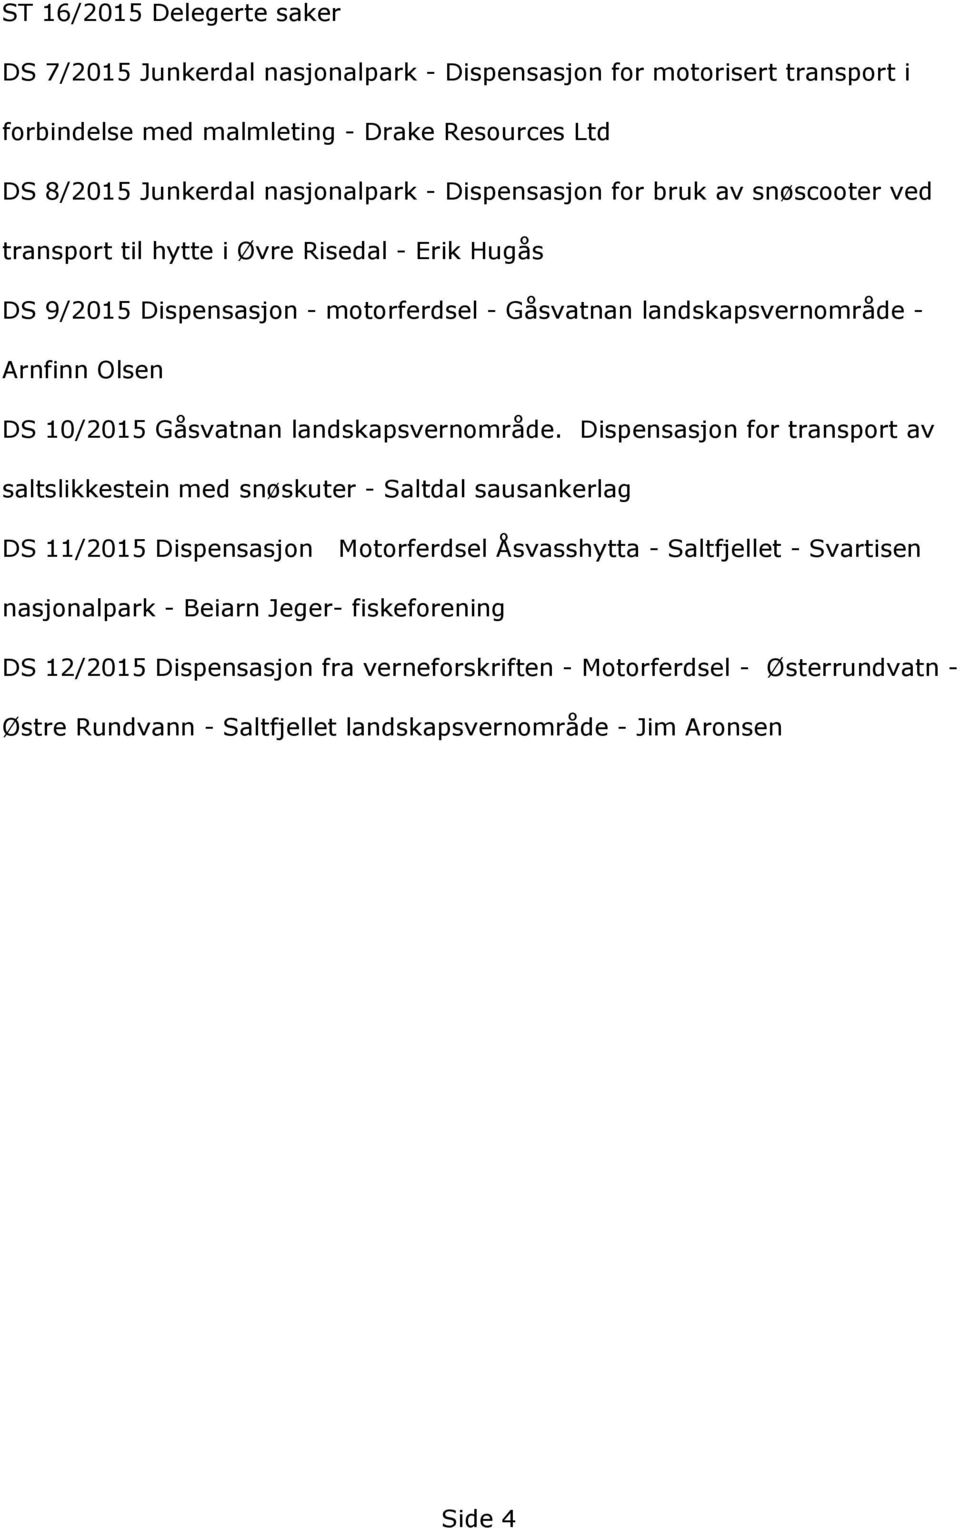 DS9/2015Dispensasjon-motorferdsel-Gåsvatnanlandskapsvernområde- ArnfinnOlsen DS10/2015Gåsvatnanlandskapsvernområde.